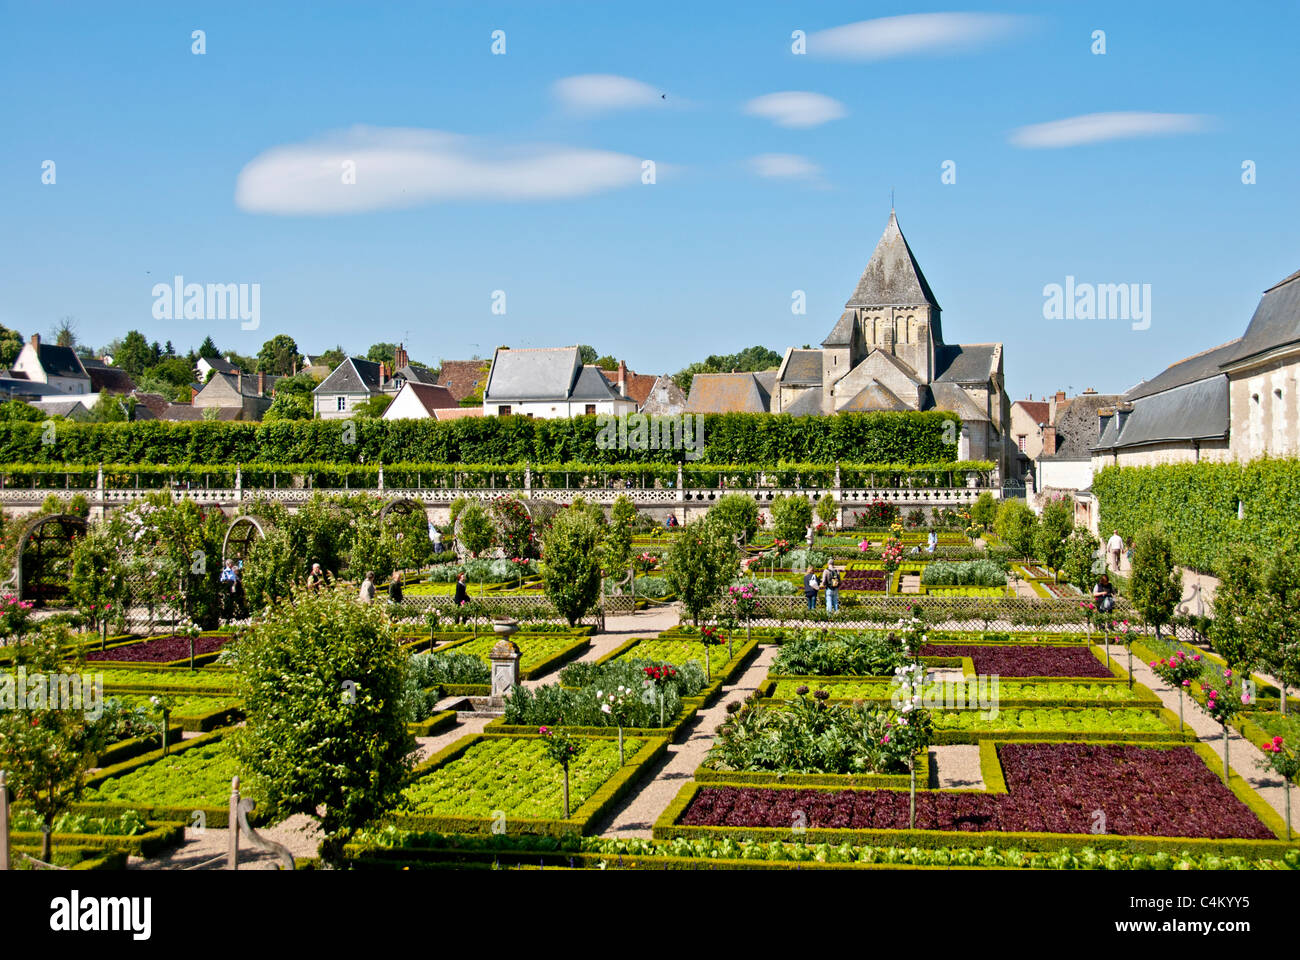 View over the Potager Garden, Chateau de Villandry, Indre et Loire, France Stock Photo